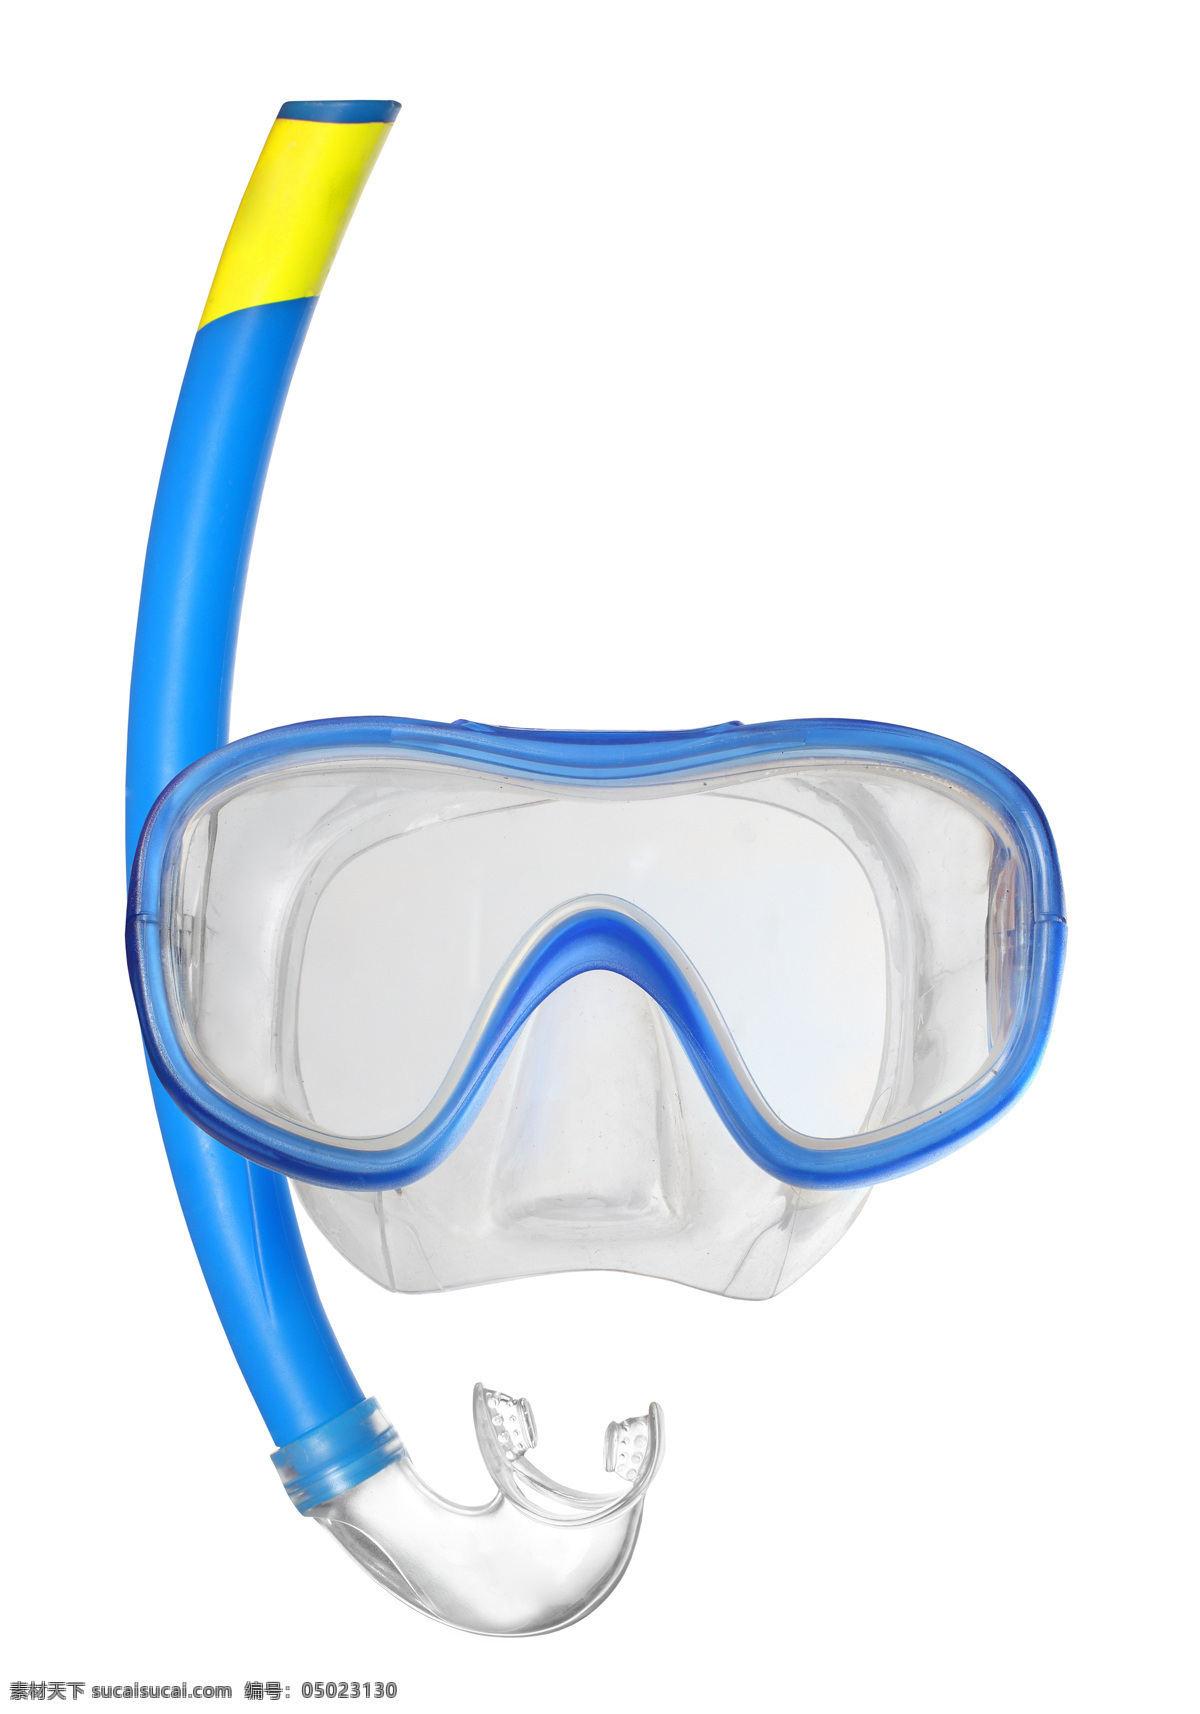 蓝色 眼镜 呼 吸管 呼吸管 潜水 游泳 其他类别 生活百科 白色